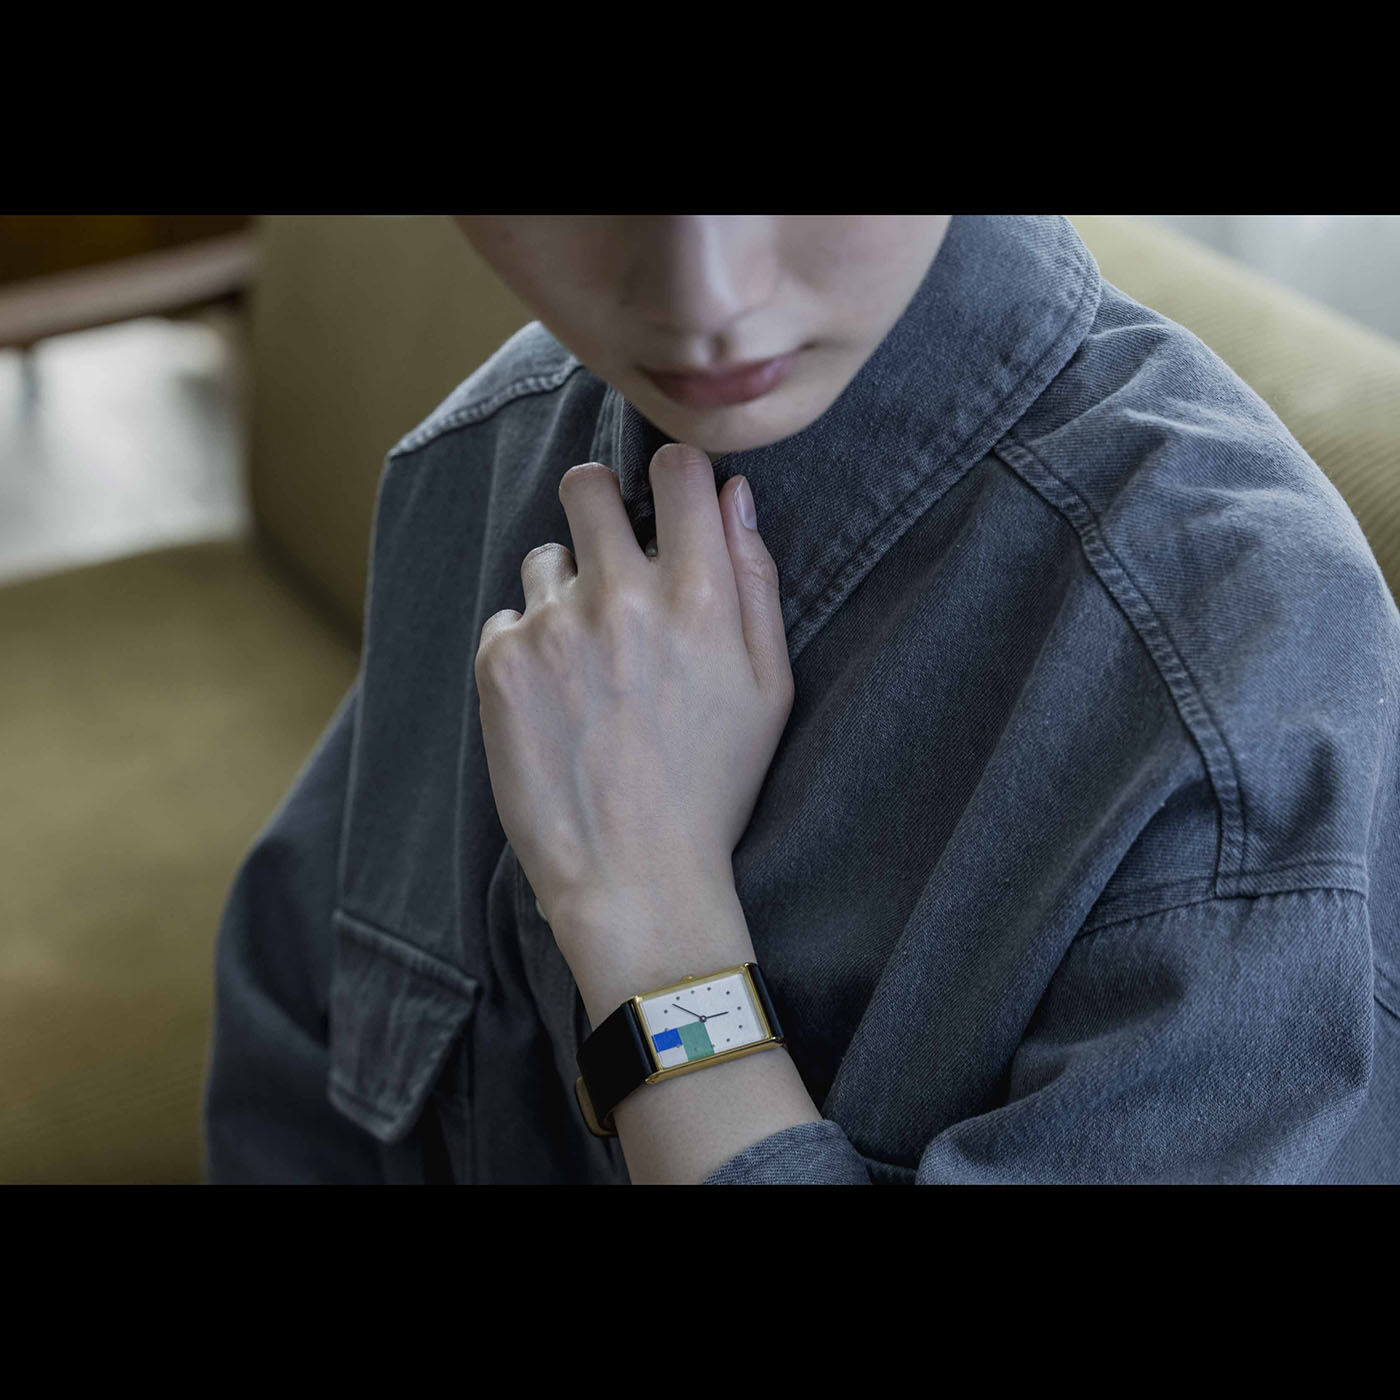 ＆Stories|金沢の時計職人が手掛けた 白銀比に見惚れる腕時計〈メルティングスノー・ブラック〉